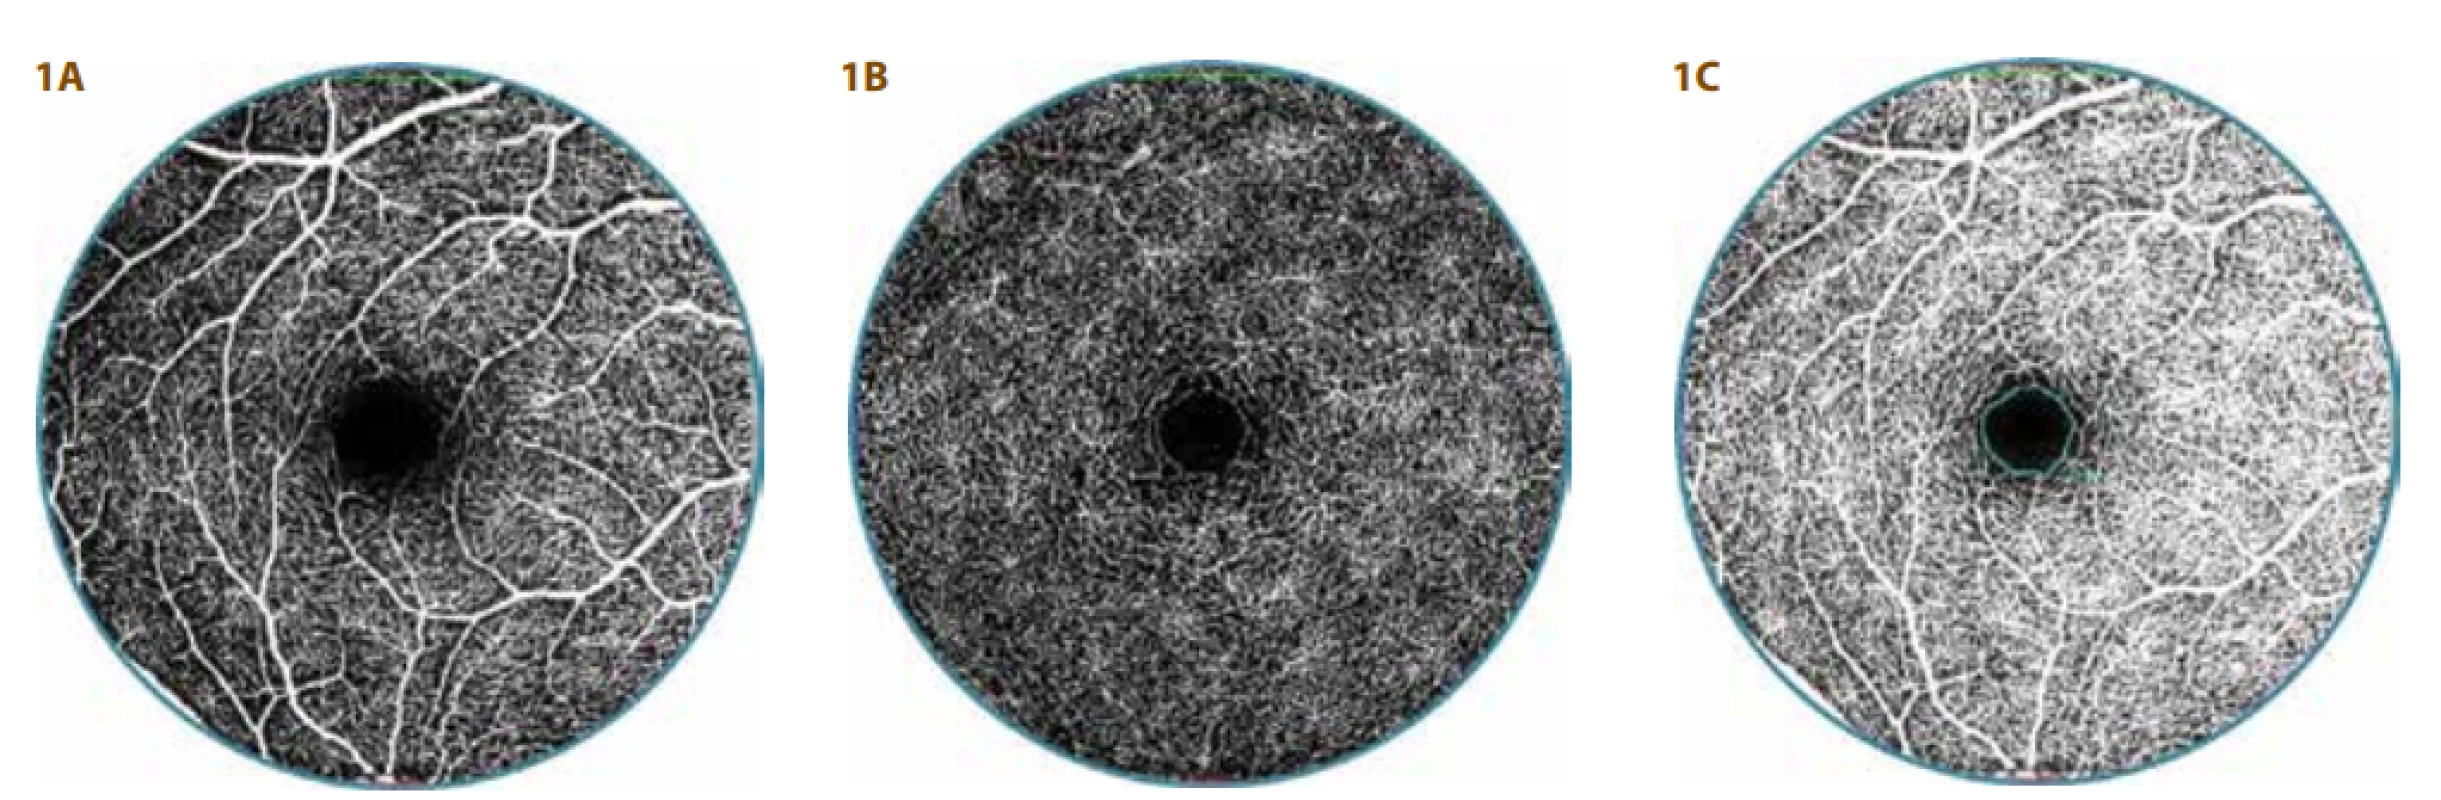 OCT-A vyšetření zdravé 24leté ženy<br>
A. Povrchový vaskulární komplex (SVC) s pravidelnou kapilární sítí<br>
B. Hluboký vaskulární komplex (DVC) s hustou kapilární sítí
a pravidelnou foveální avaskulární zónou (FAZ)<br>
C. Pravidelná, ohraničená a  okrouhlá FAZ (vyznačená modře)
velikosti 0,28 mm² 